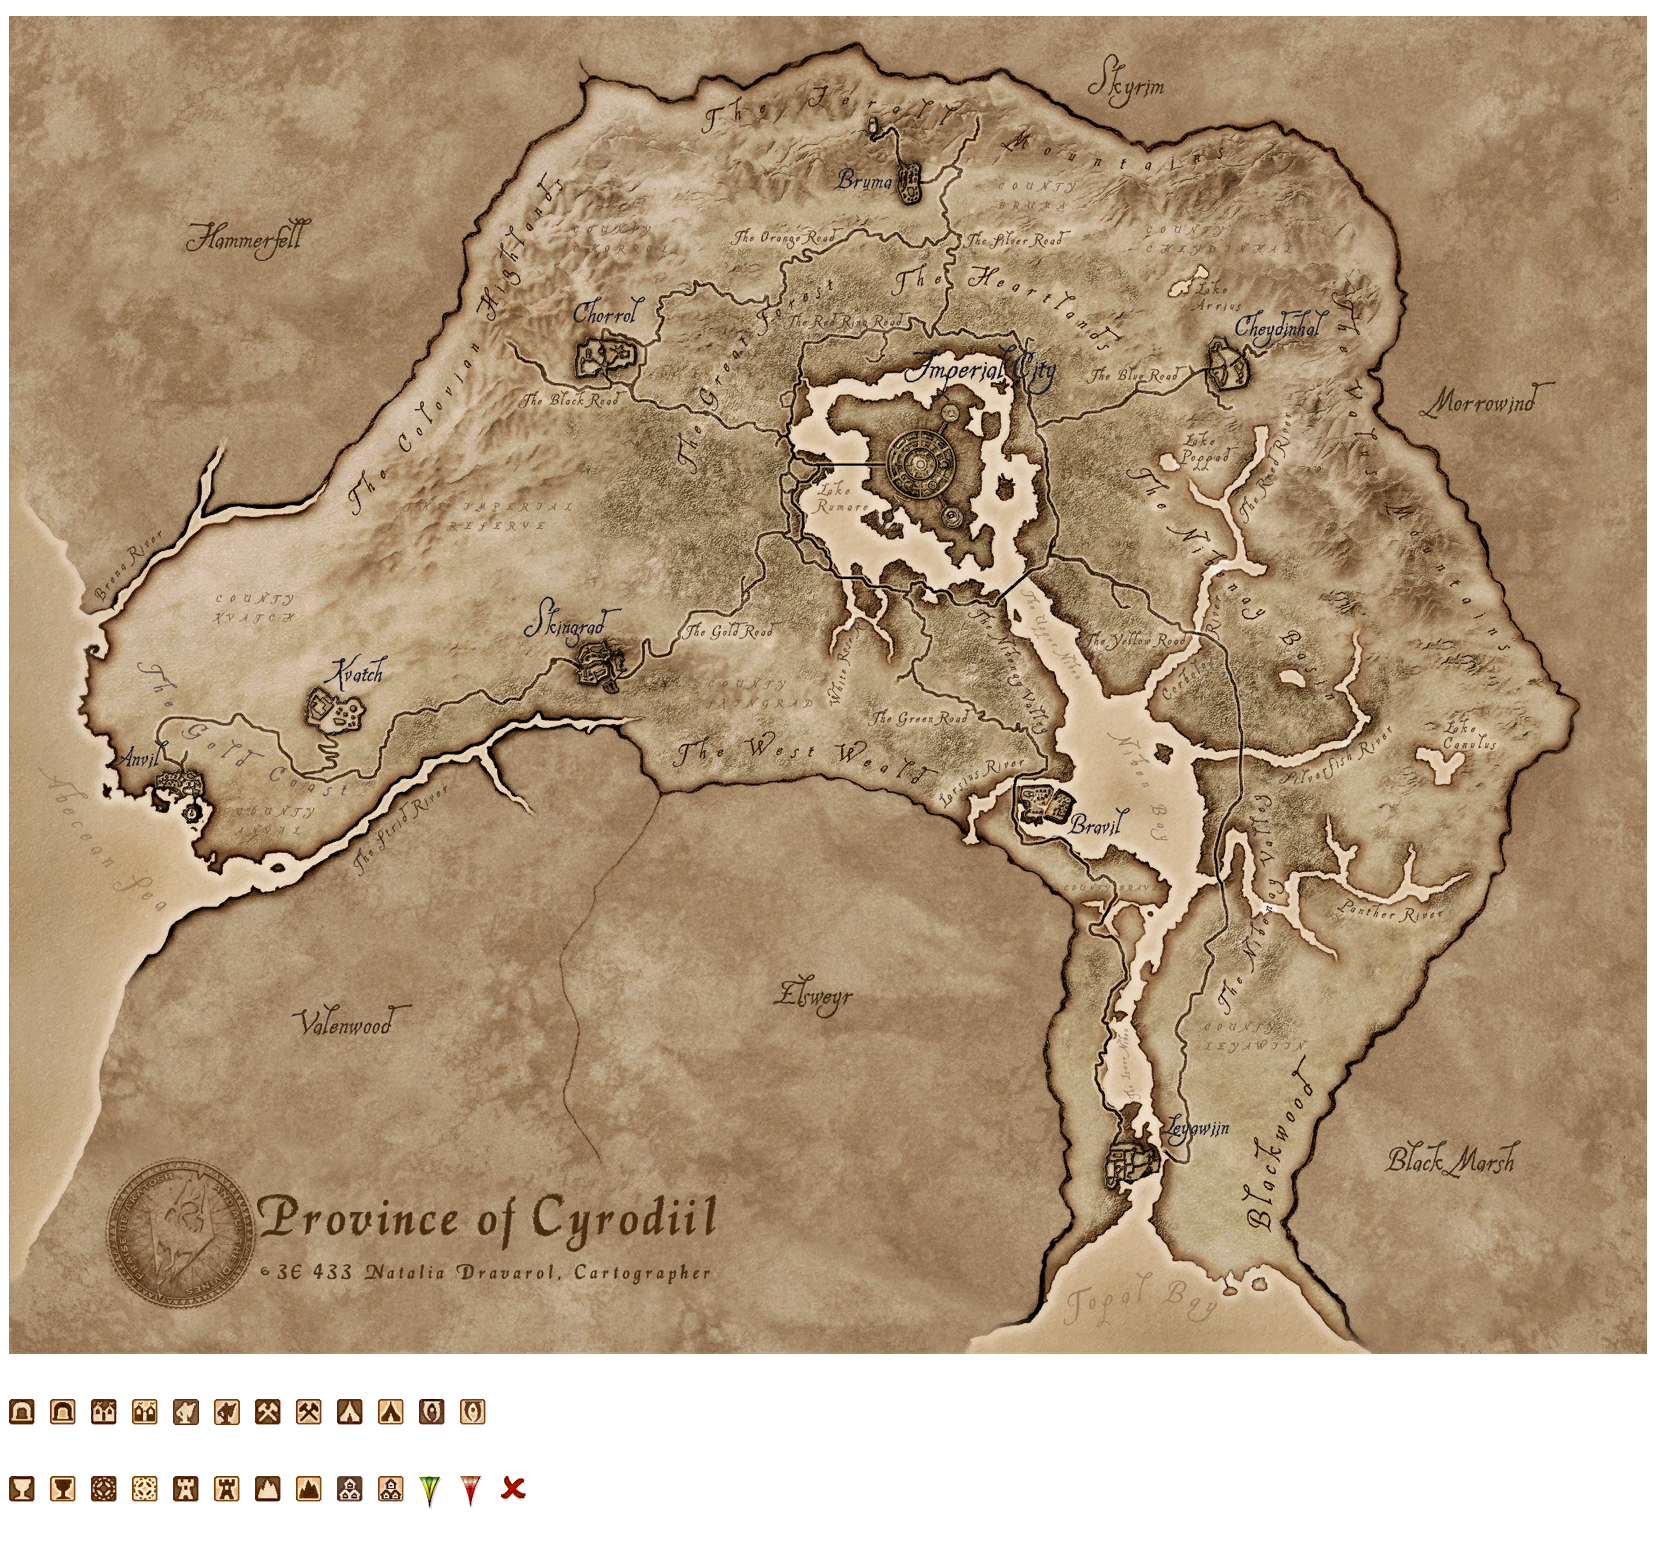 The Elder Scrolls IV: Oblivion - Map of Cyrodiil